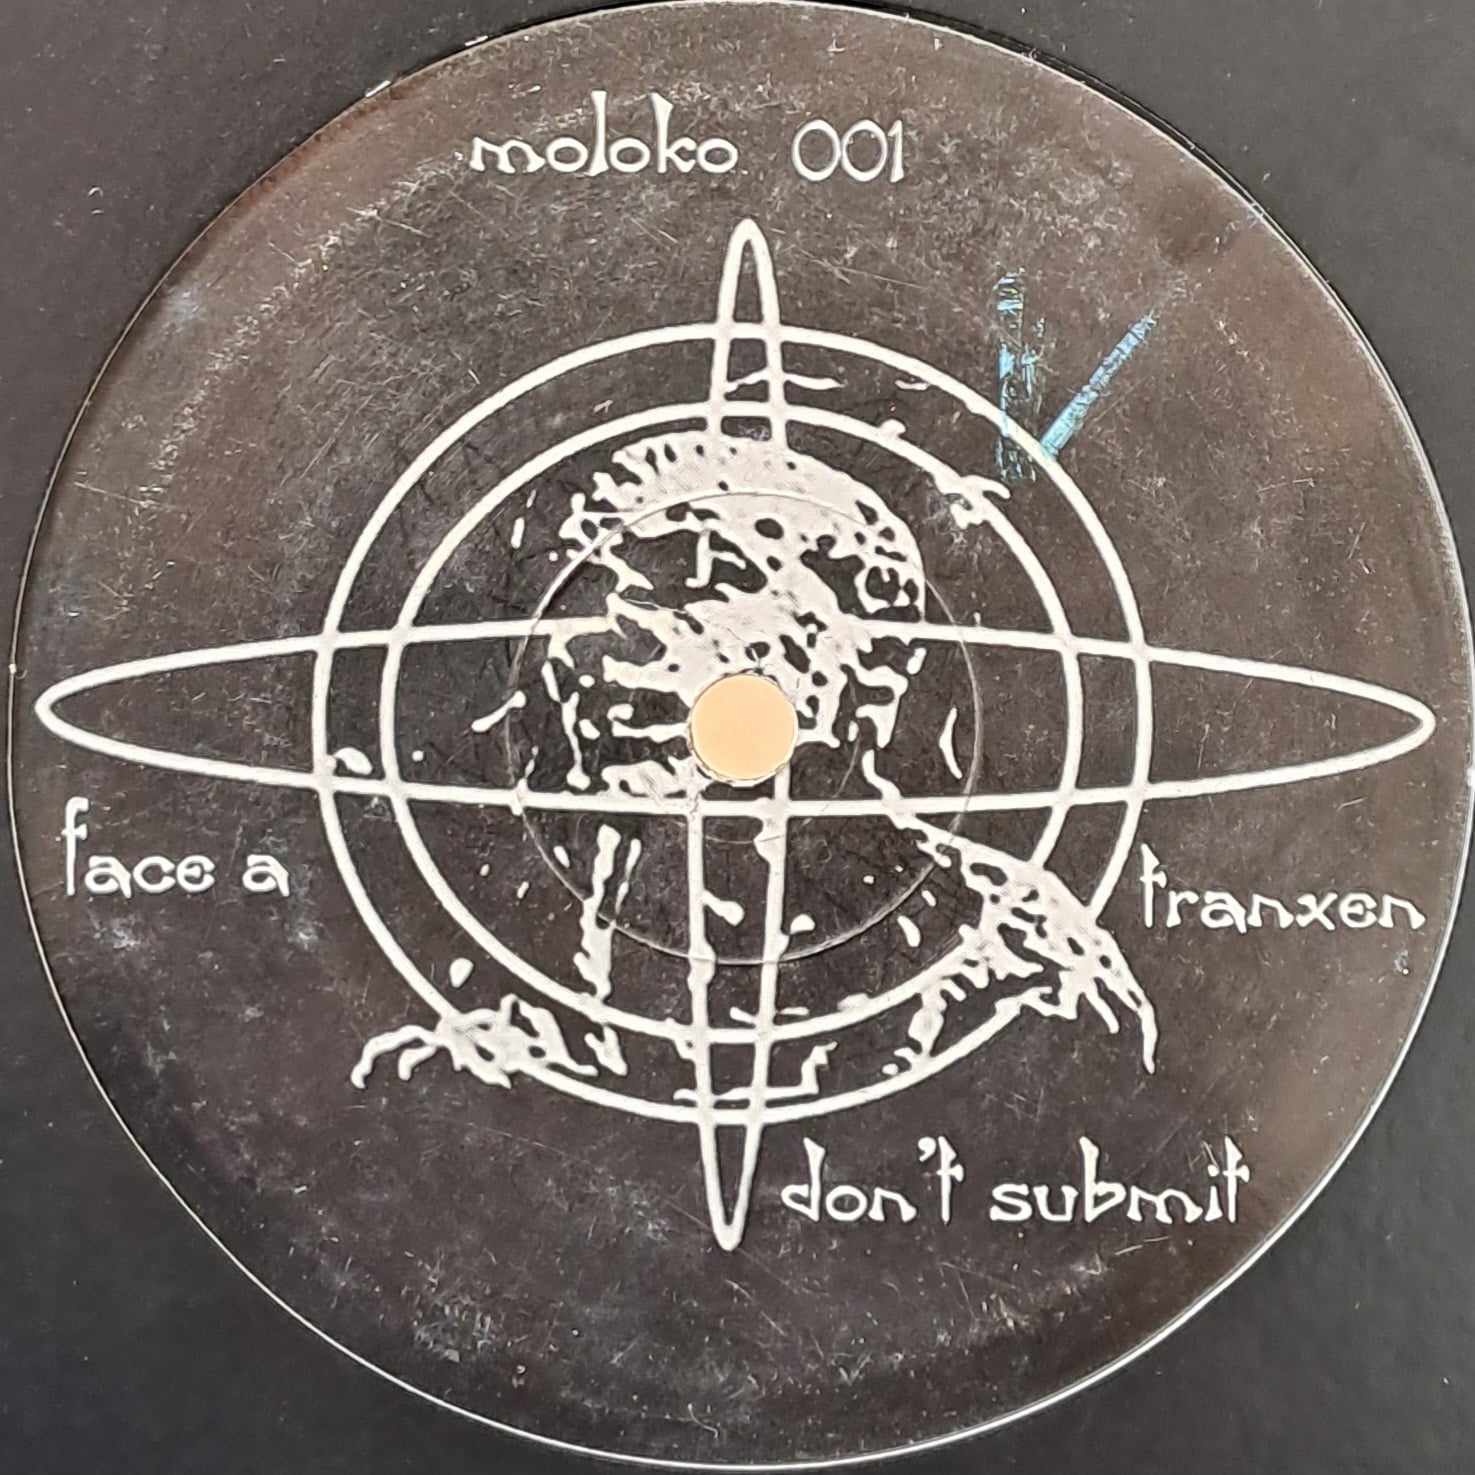 Moloko 01 - vinyle freetekno